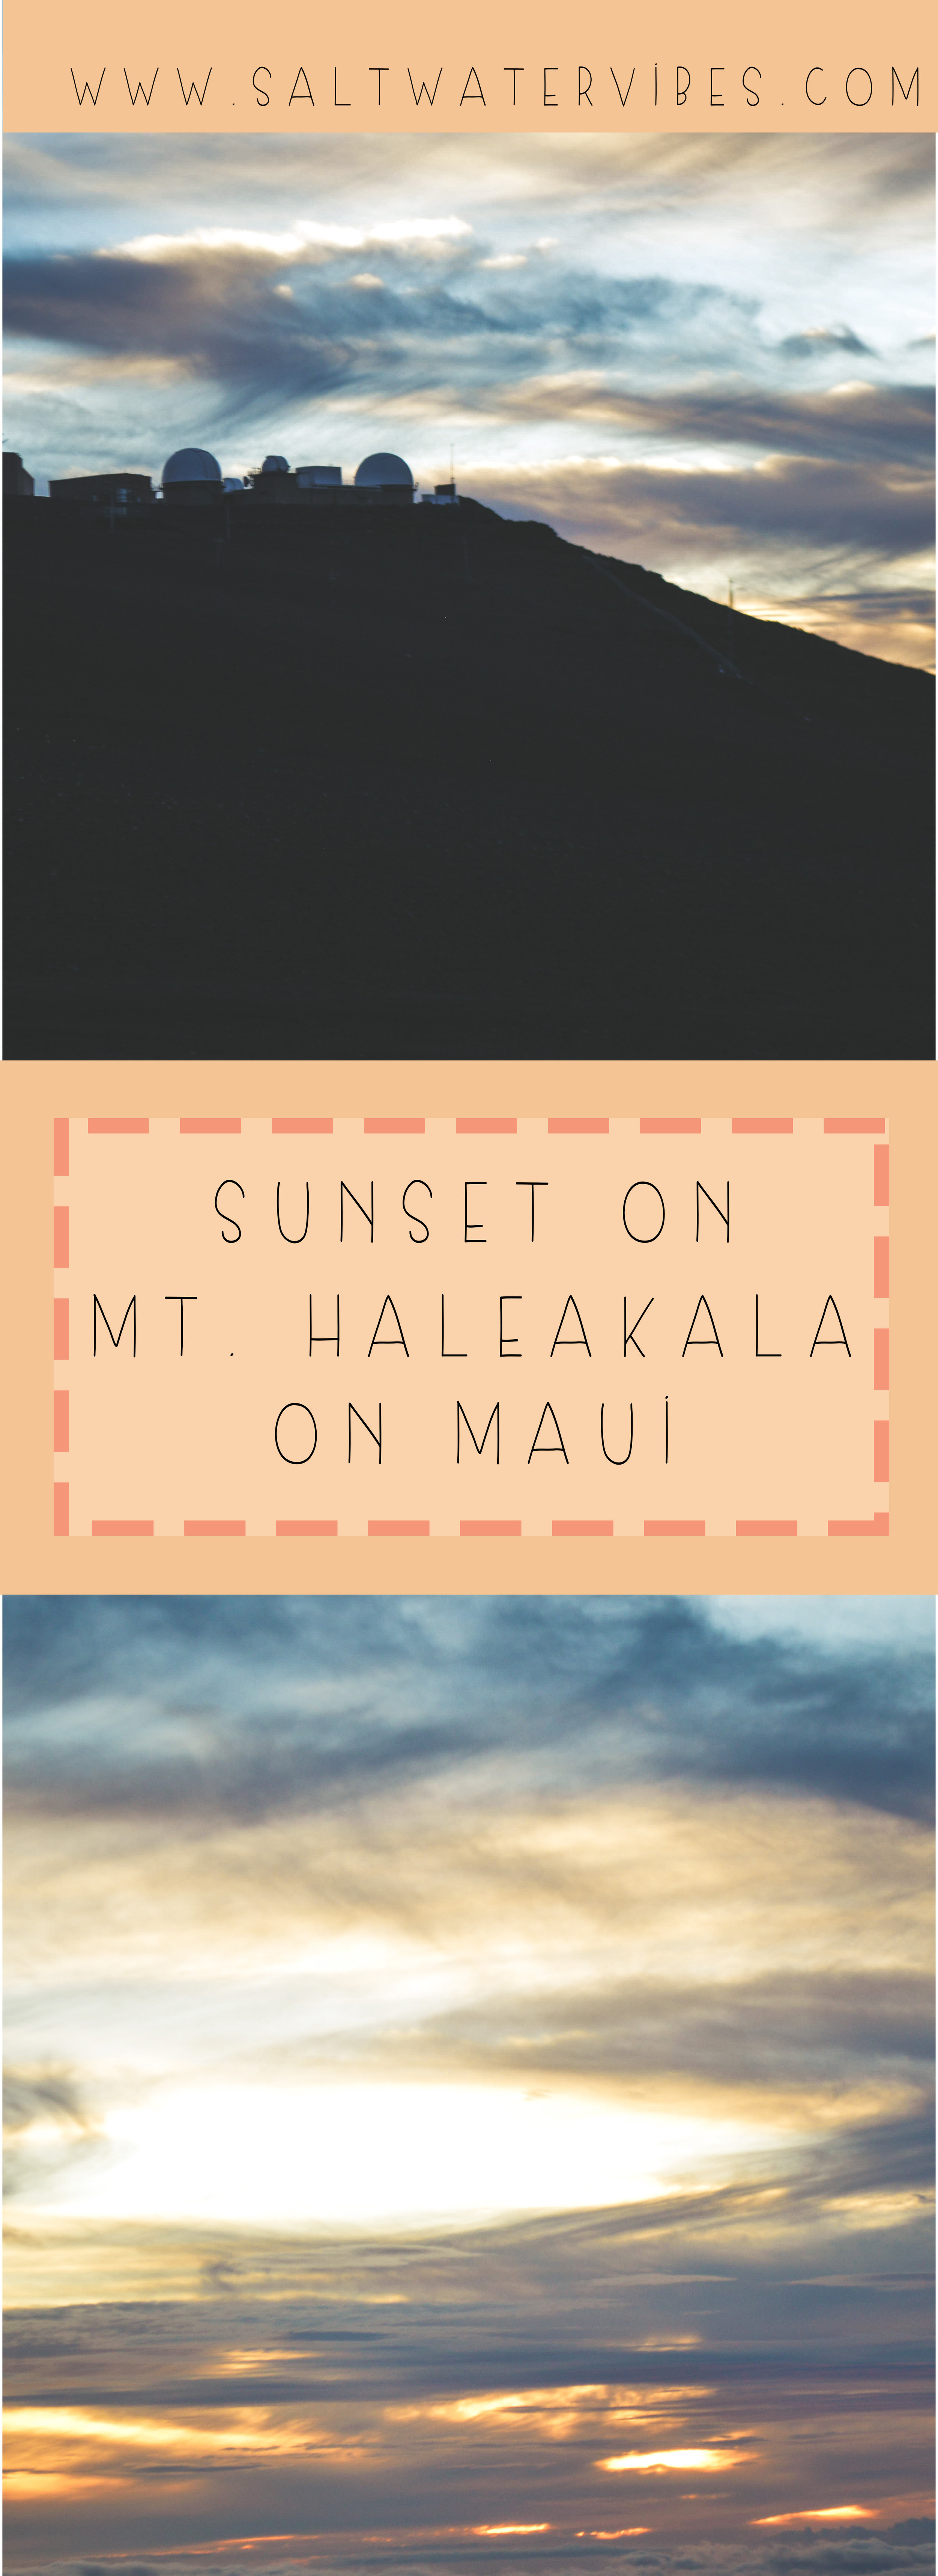 Sunset at Mt. Haleakala Maui + SaltWaterVibes